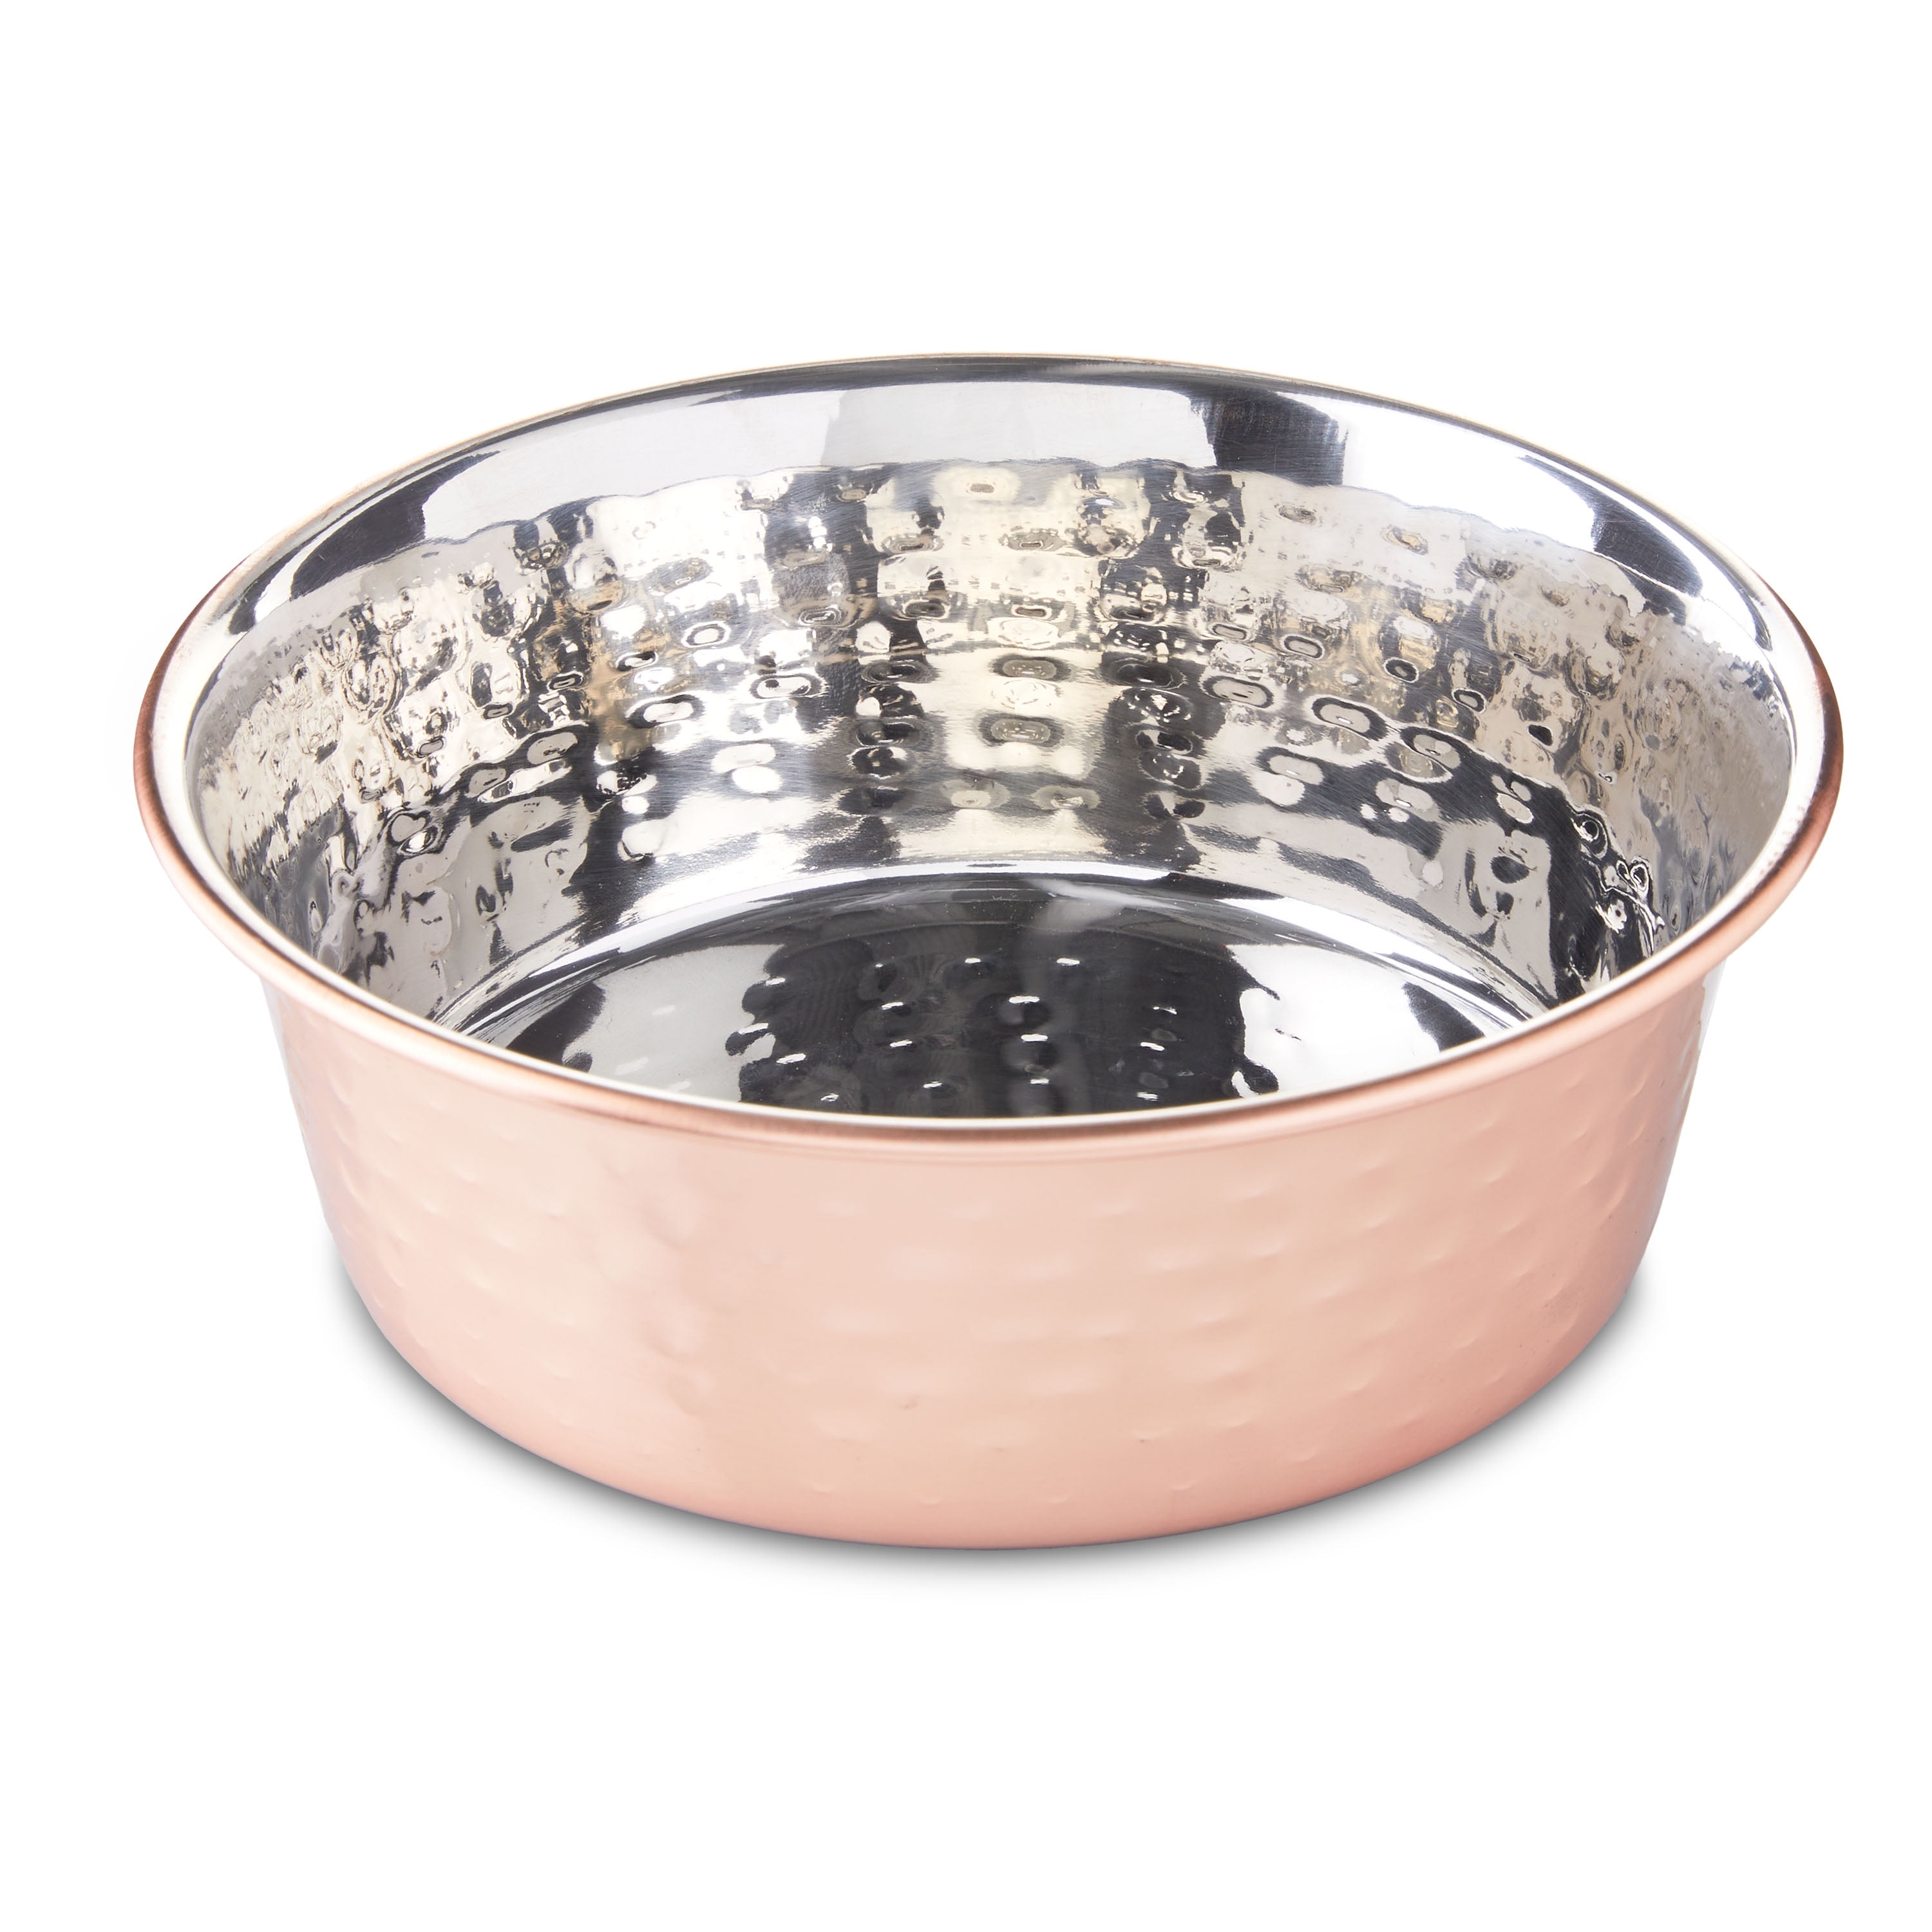 Vibrant Life Large Copper Pet Bowl, 60 oz 